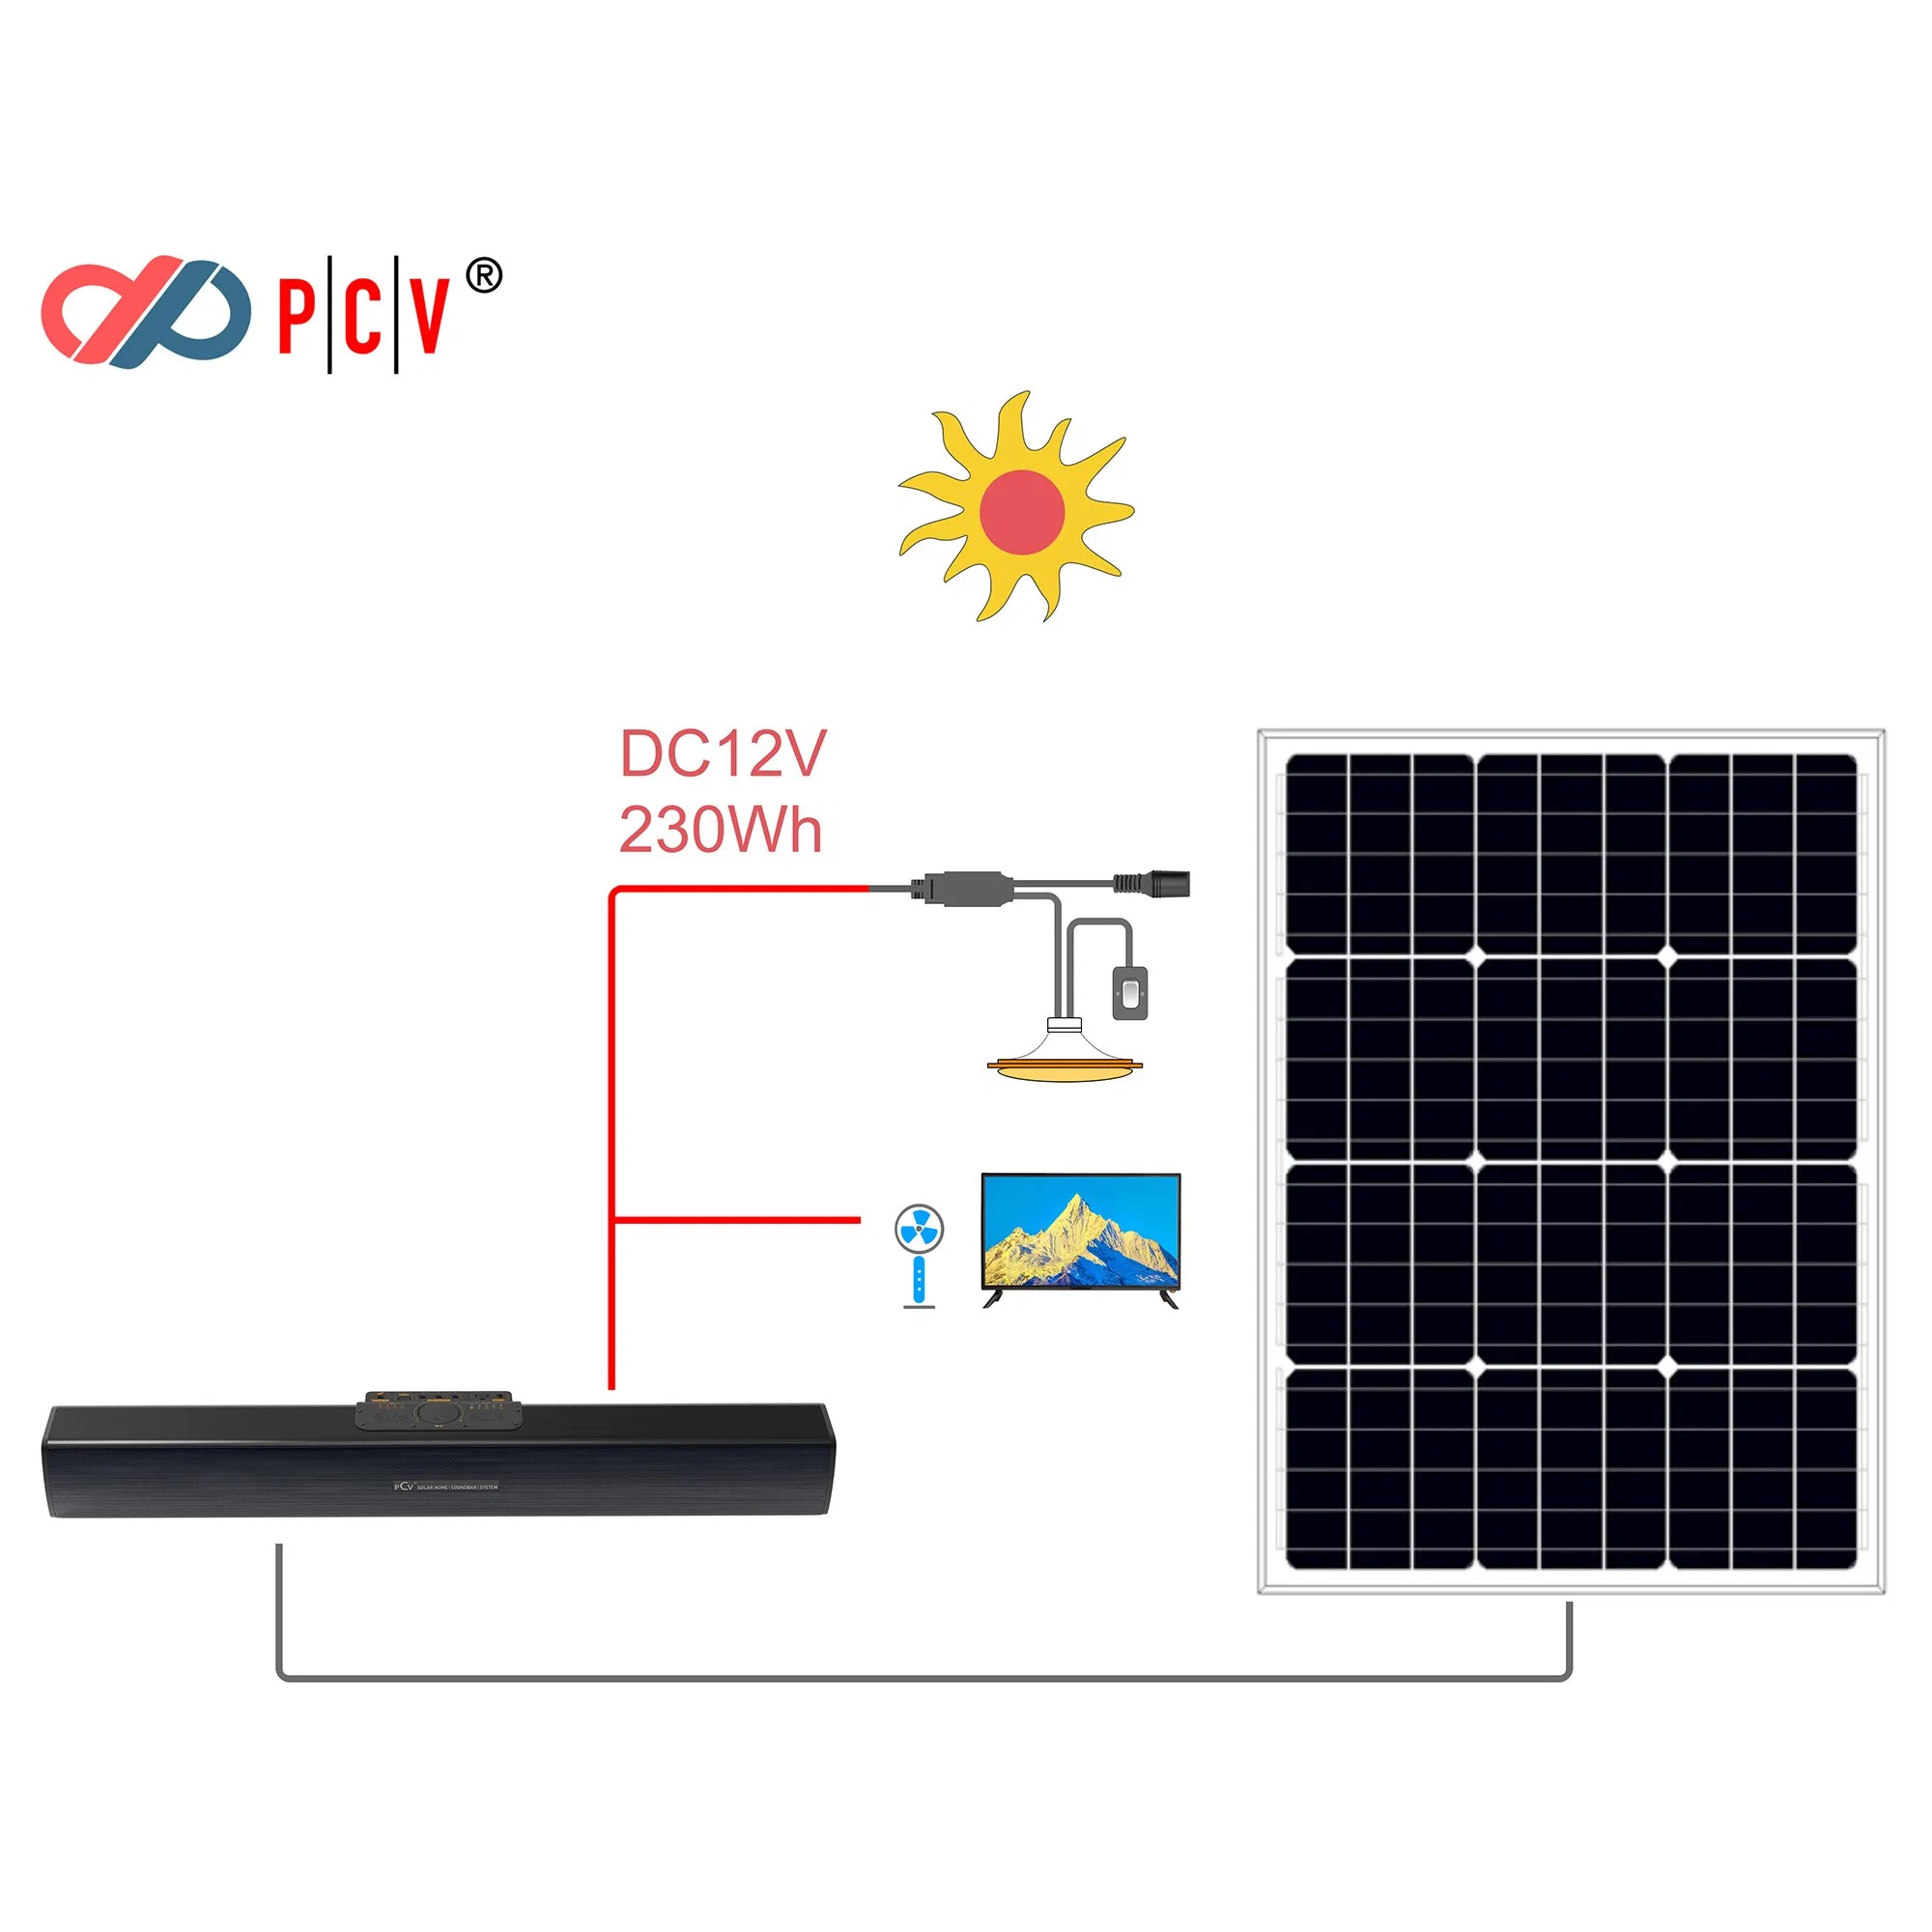 Pcv Solar Home Theater System Solar Home Beleuchtung System Solar Soundbar + tragbarer DC-Fernseher für den Außenbereich